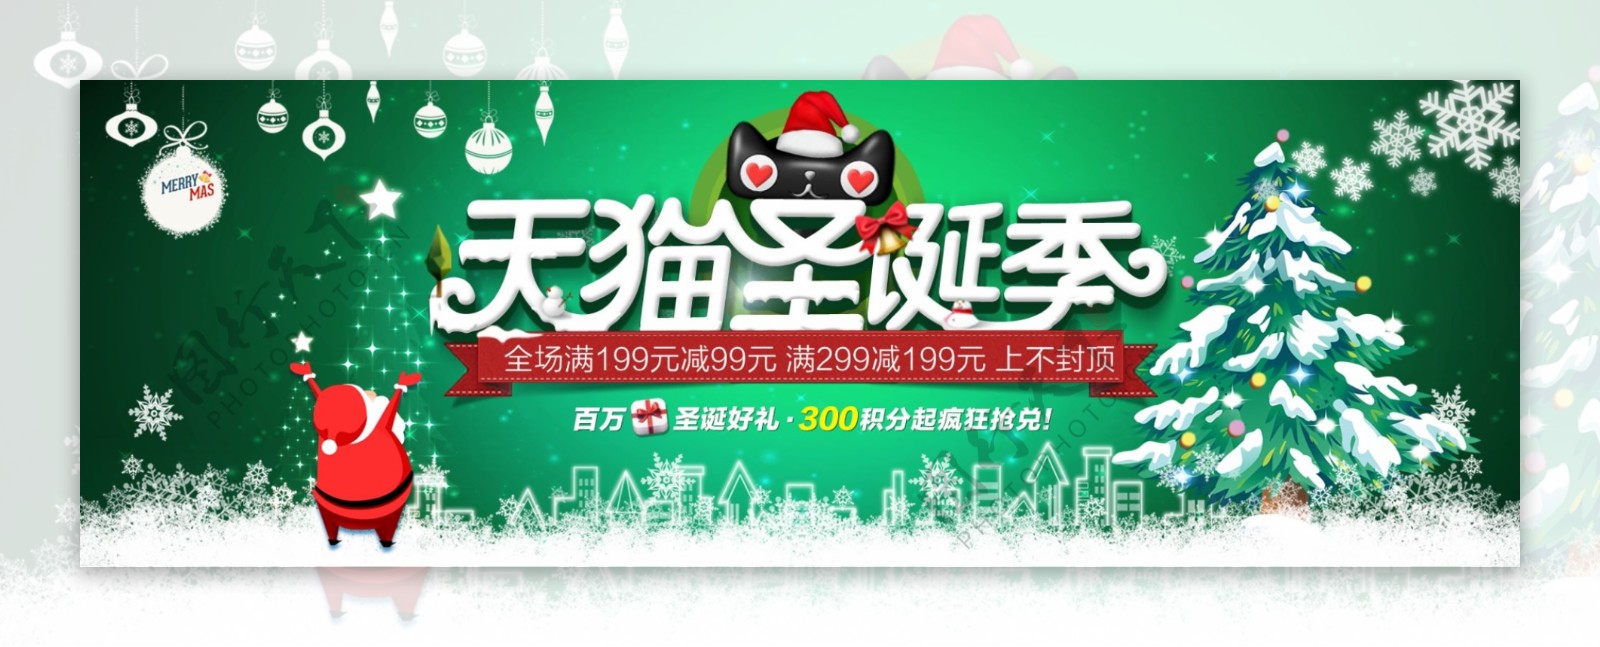 浅绿色简约天猫圣诞季节日电商banner